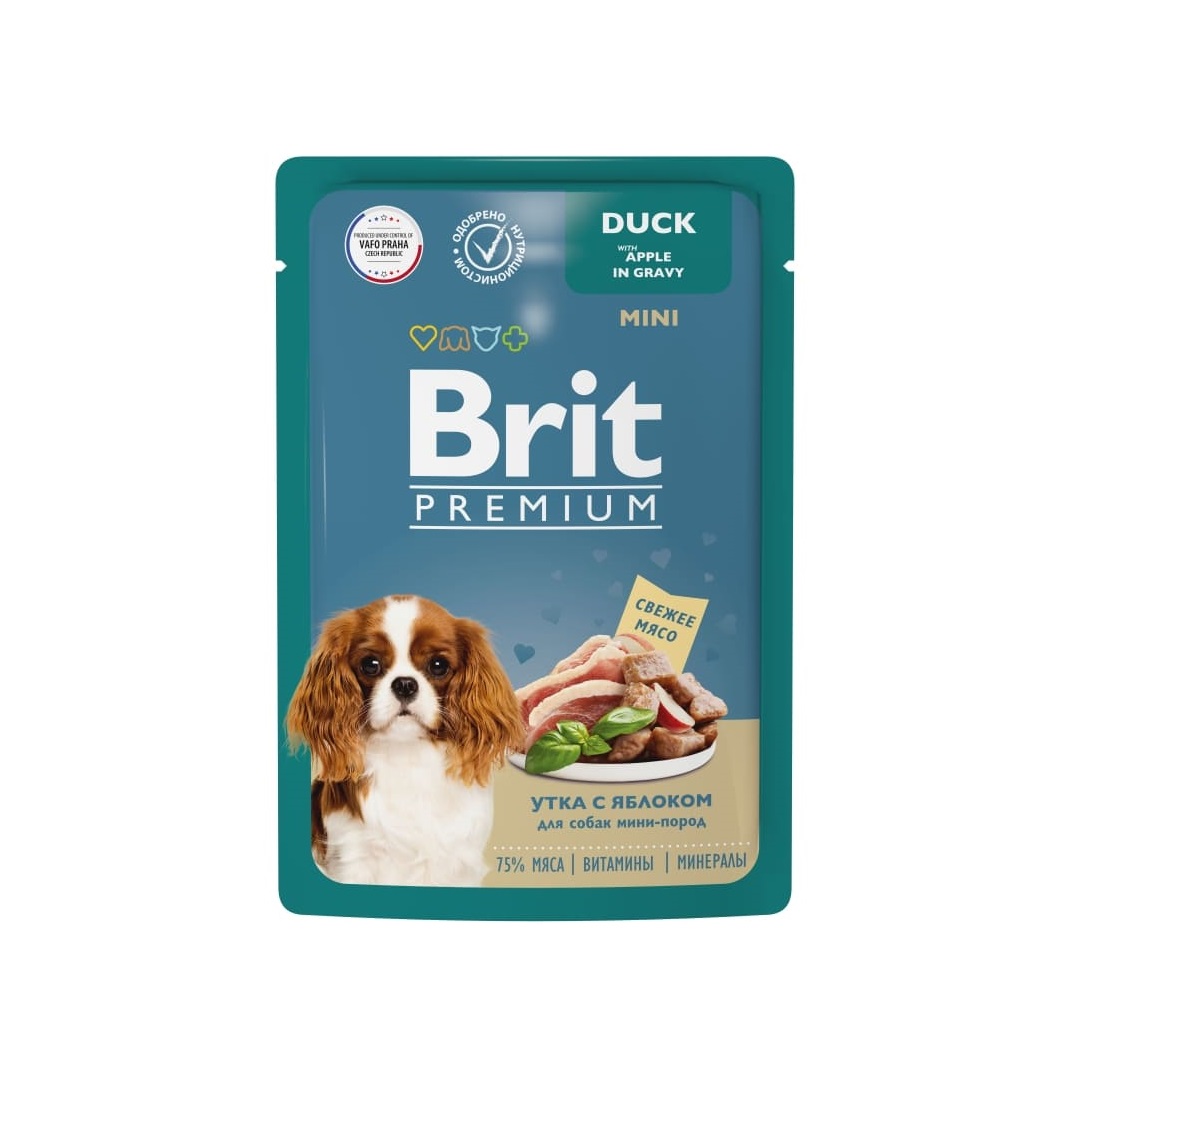 Брит 85гр - Утка/Яблоко - Соус - для Собак Мини (Brit Premium by Nature)